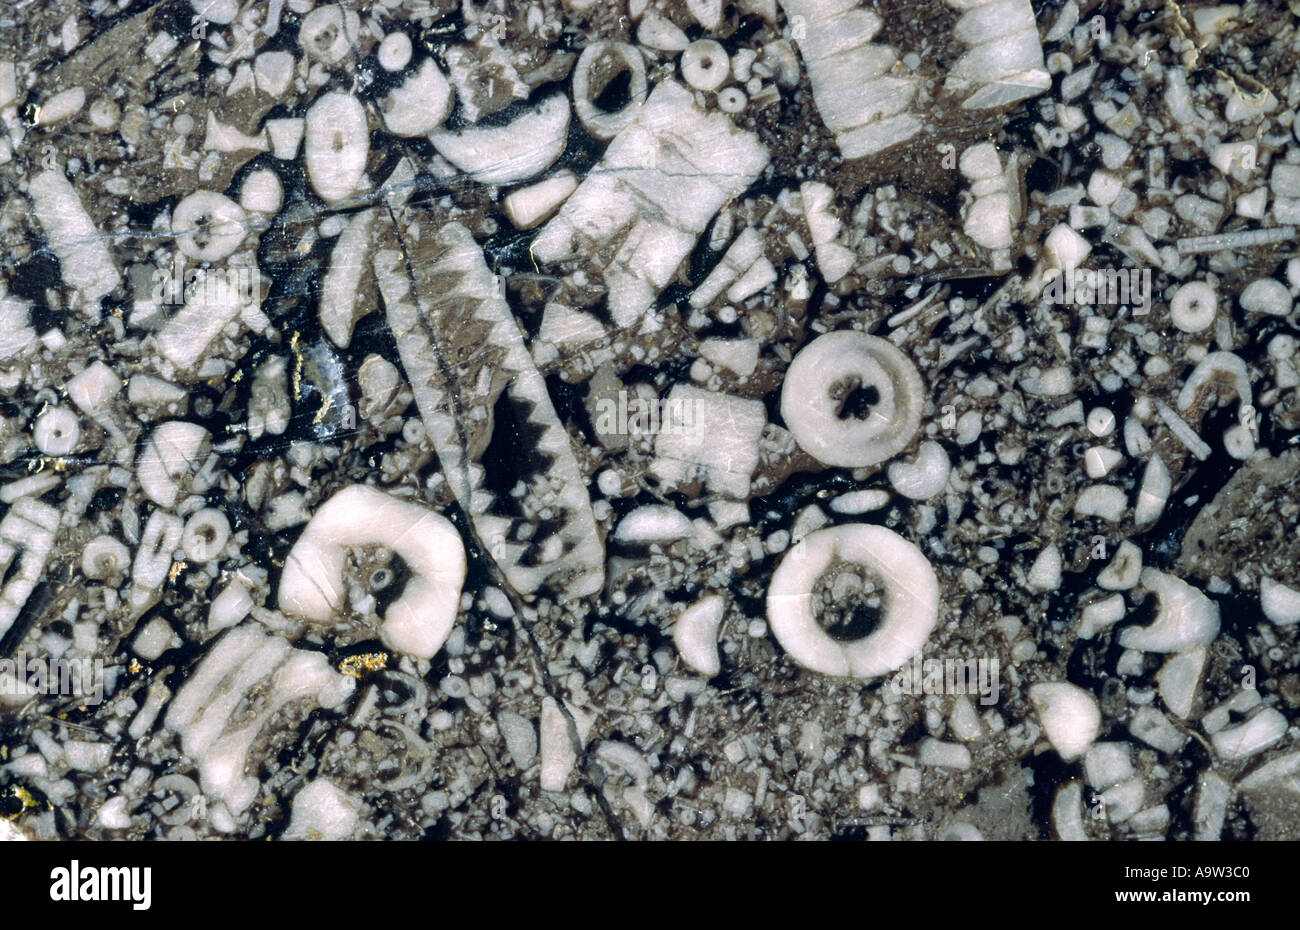 Sección transversal de roca caliza. Excelente ejemplo de crinoid mar lily fósiles de caverna Treakcliff, Castleton, Derbyshire, Reino Unido Foto de stock